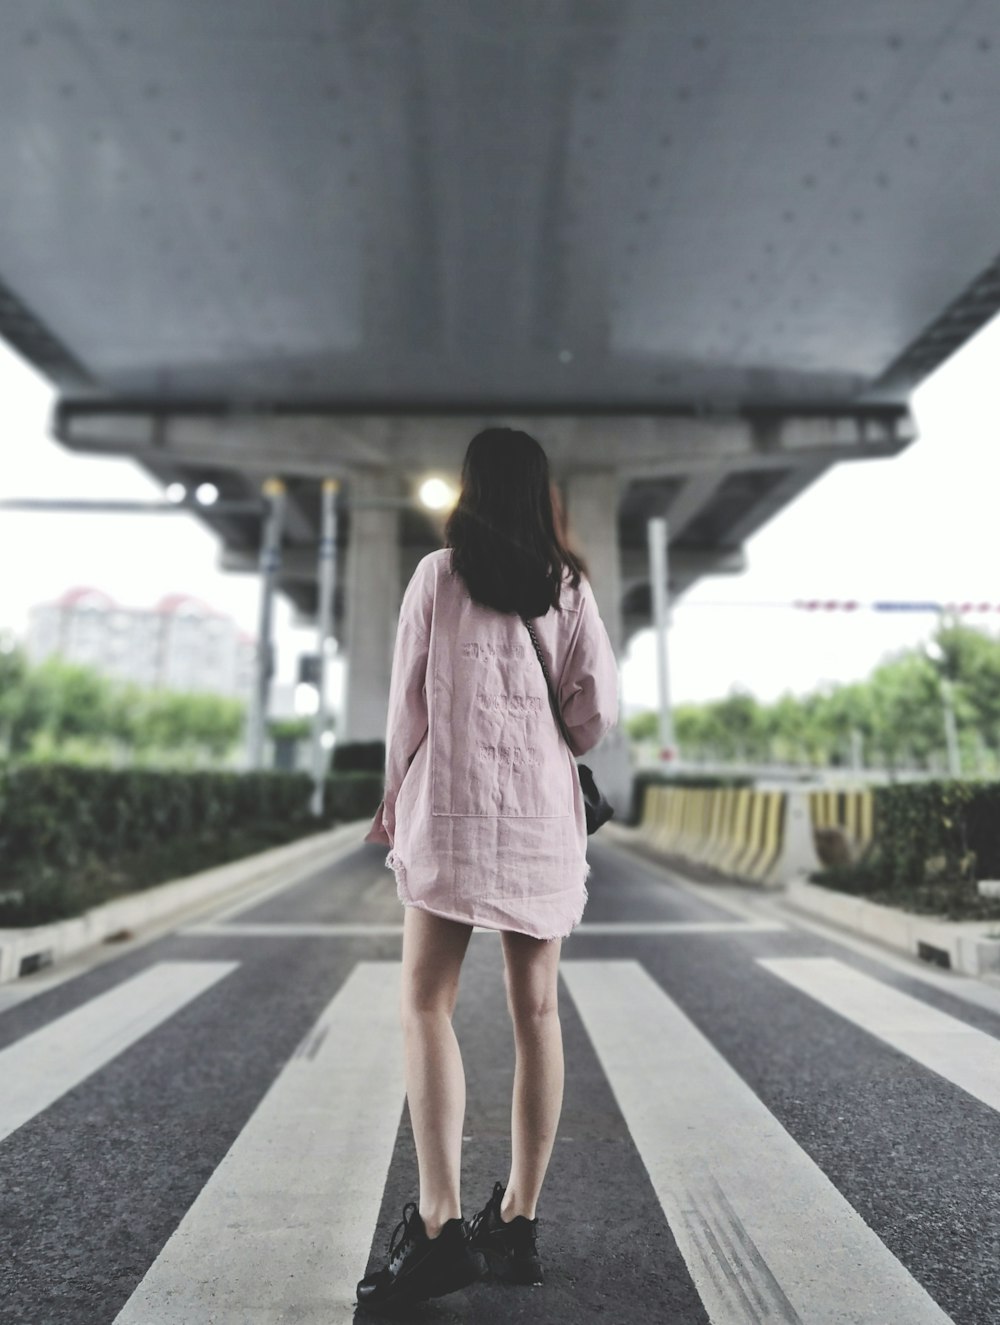 girl standing on pedestrian lane during daytime